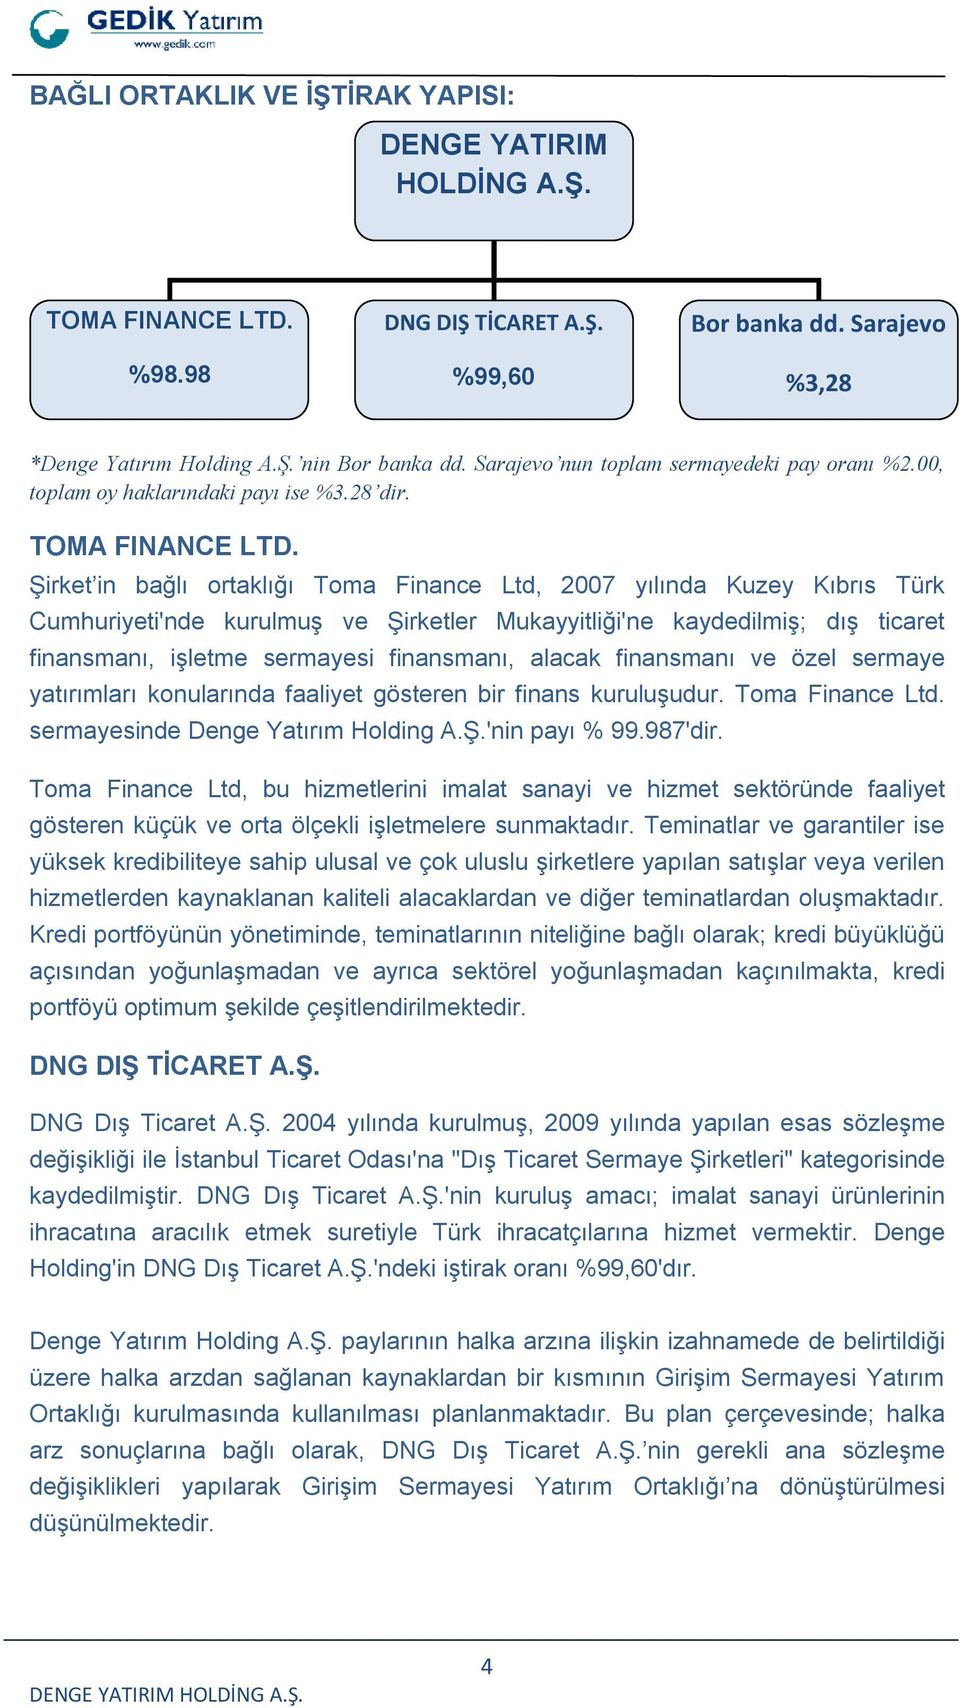 Şirket in bağlı ortaklığı Toma Finance Ltd, 2007 yılında Kuzey Kıbrıs Türk Cumhuriyeti'nde kurulmuş ve Şirketler Mukayyitliği'ne kaydedilmiş; dış ticaret finansmanı, işletme sermayesi finansmanı,